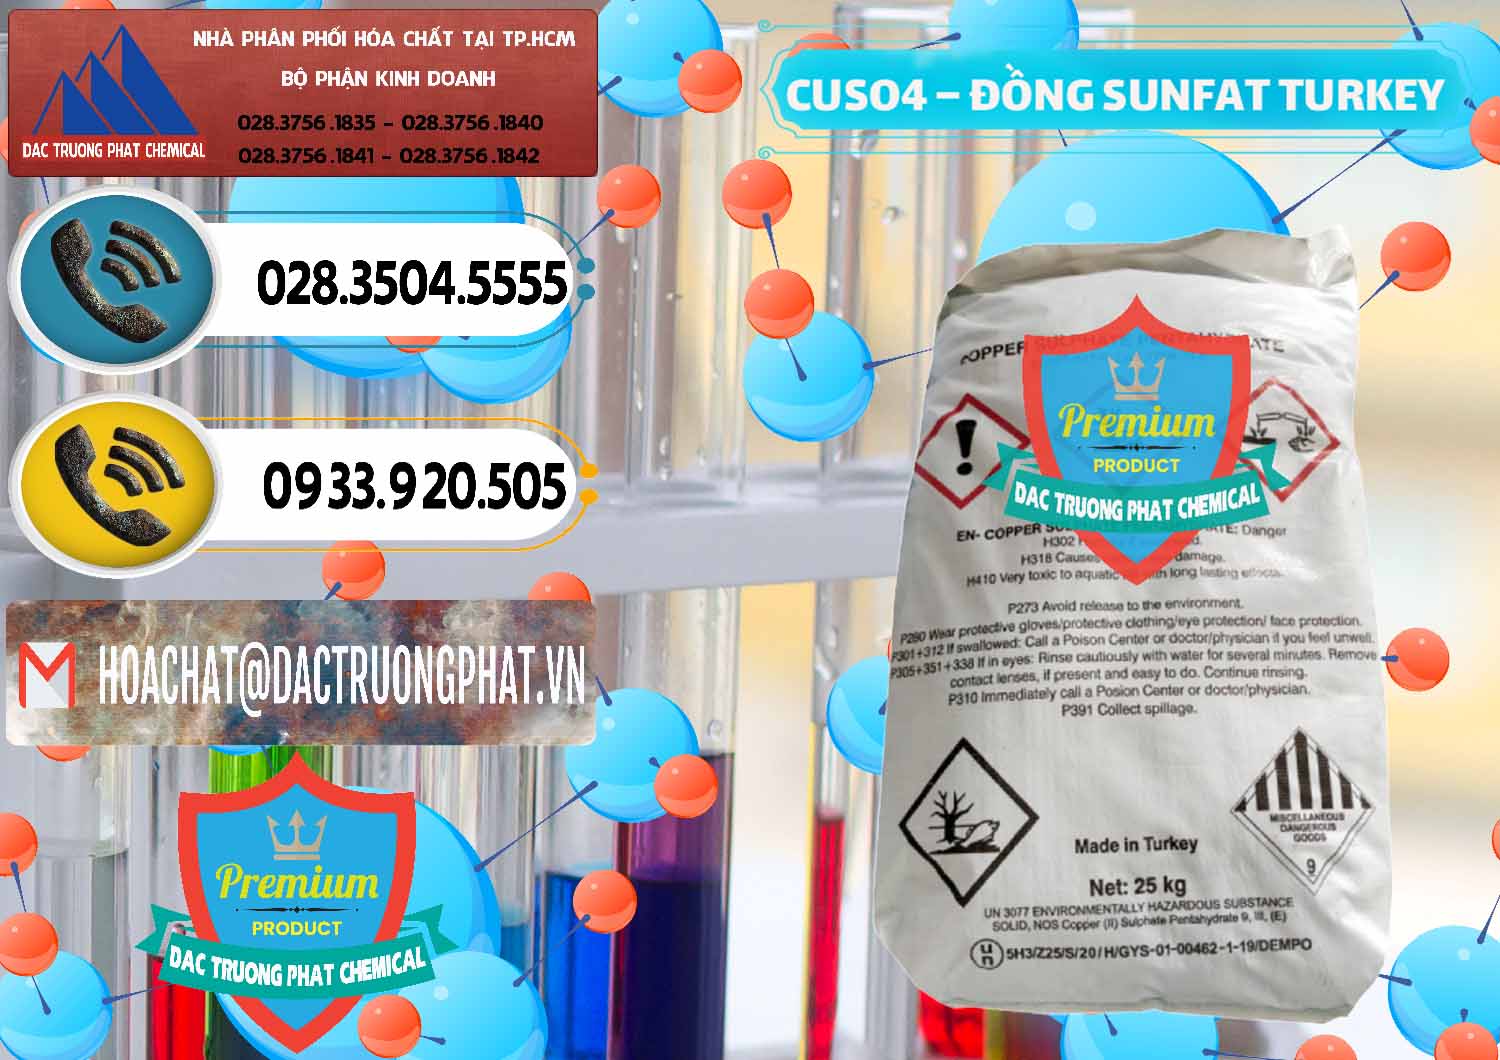 Đơn vị bán & cung cấp CuSO4 – Đồng Sunfat Thổ Nhĩ Kỳ Turkey - 0481 - Nhà cung cấp & bán hóa chất tại TP.HCM - hoachatdetnhuom.vn